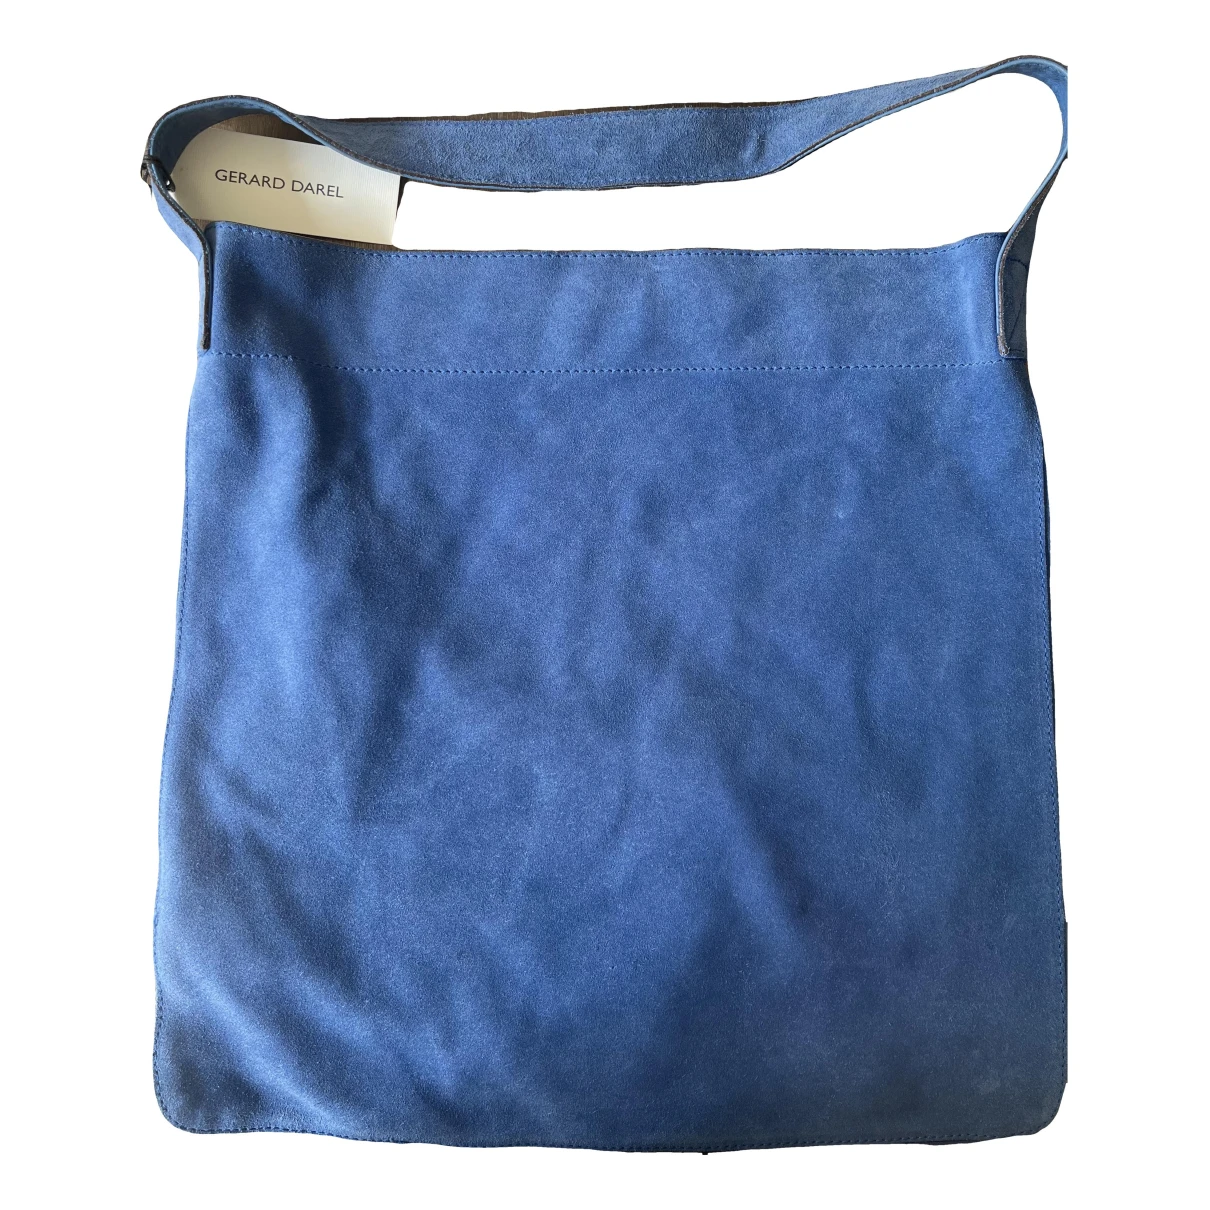 Pre-owned Gerard Darel Handbag In Blue